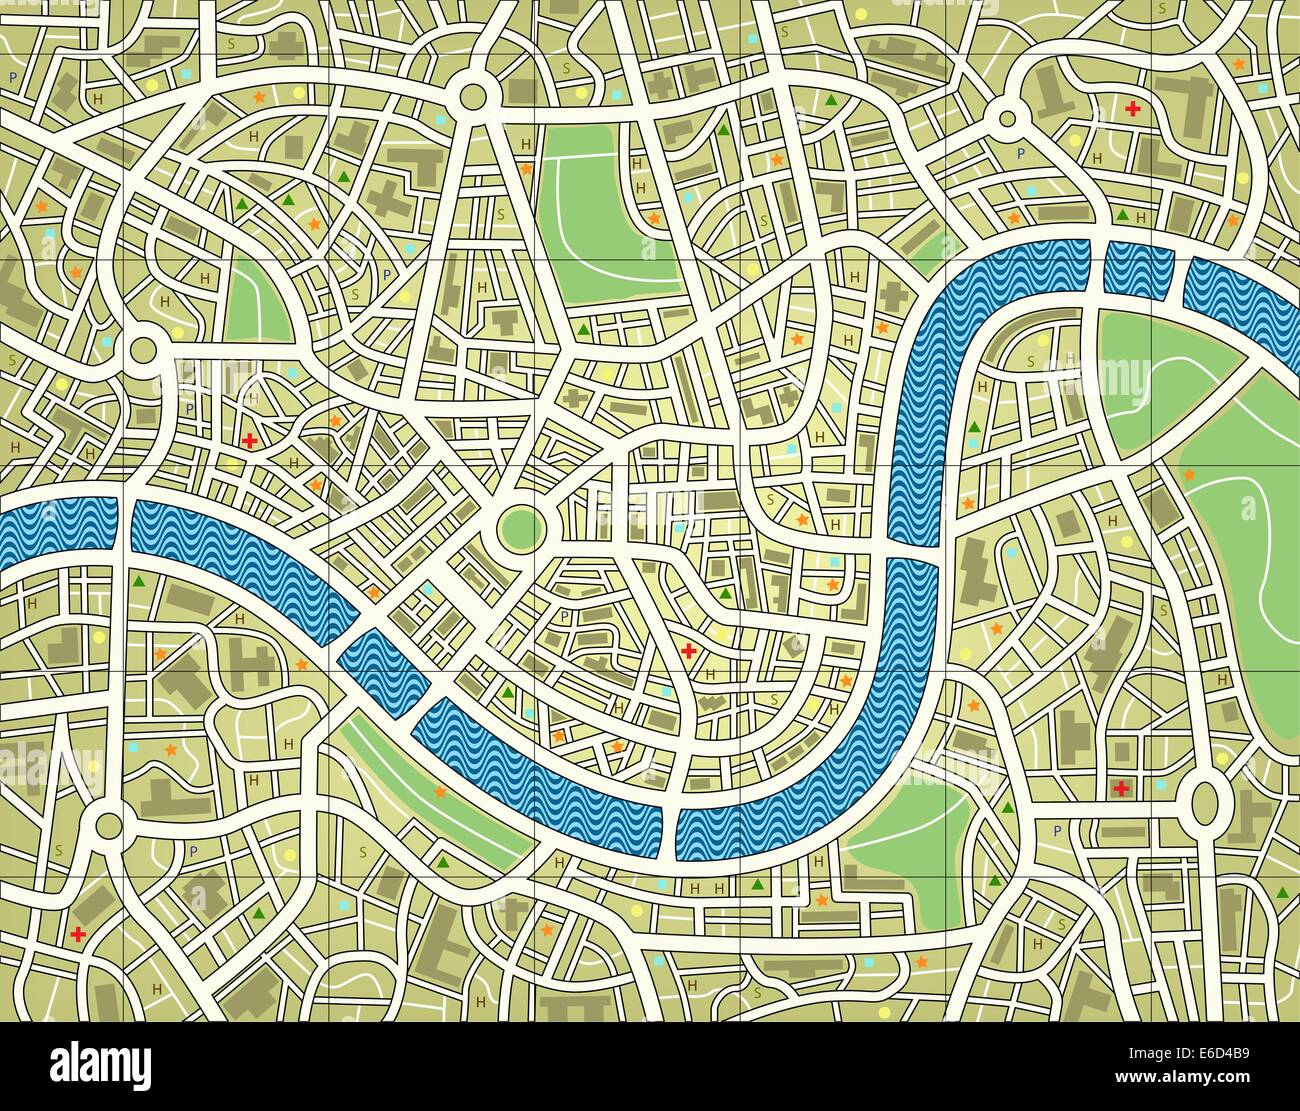 Modificabile illustrazione vettoriale di una mappa stradale senza nome Illustrazione Vettoriale